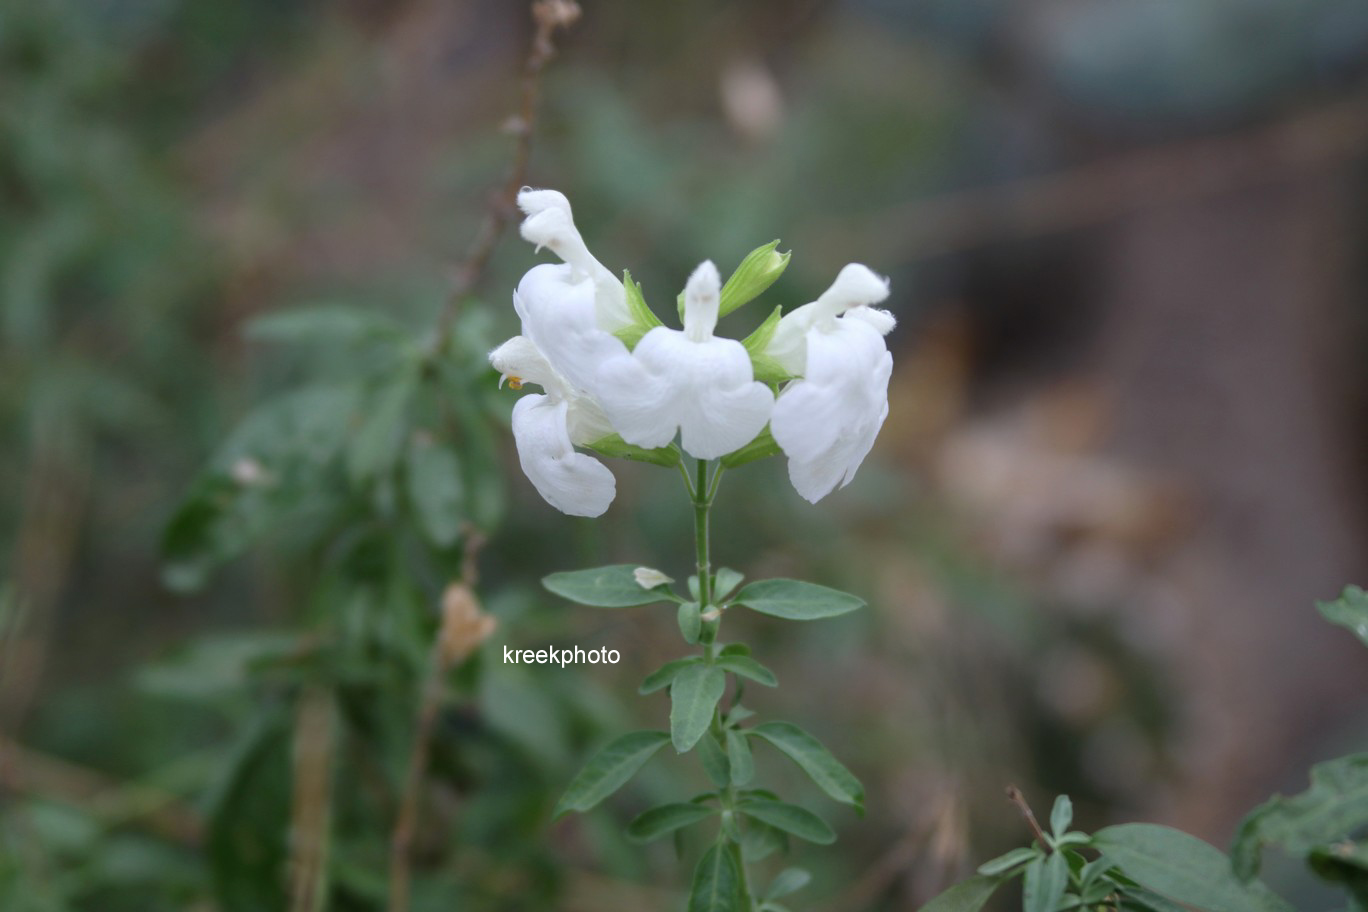 Salvia greggii 'Alba'